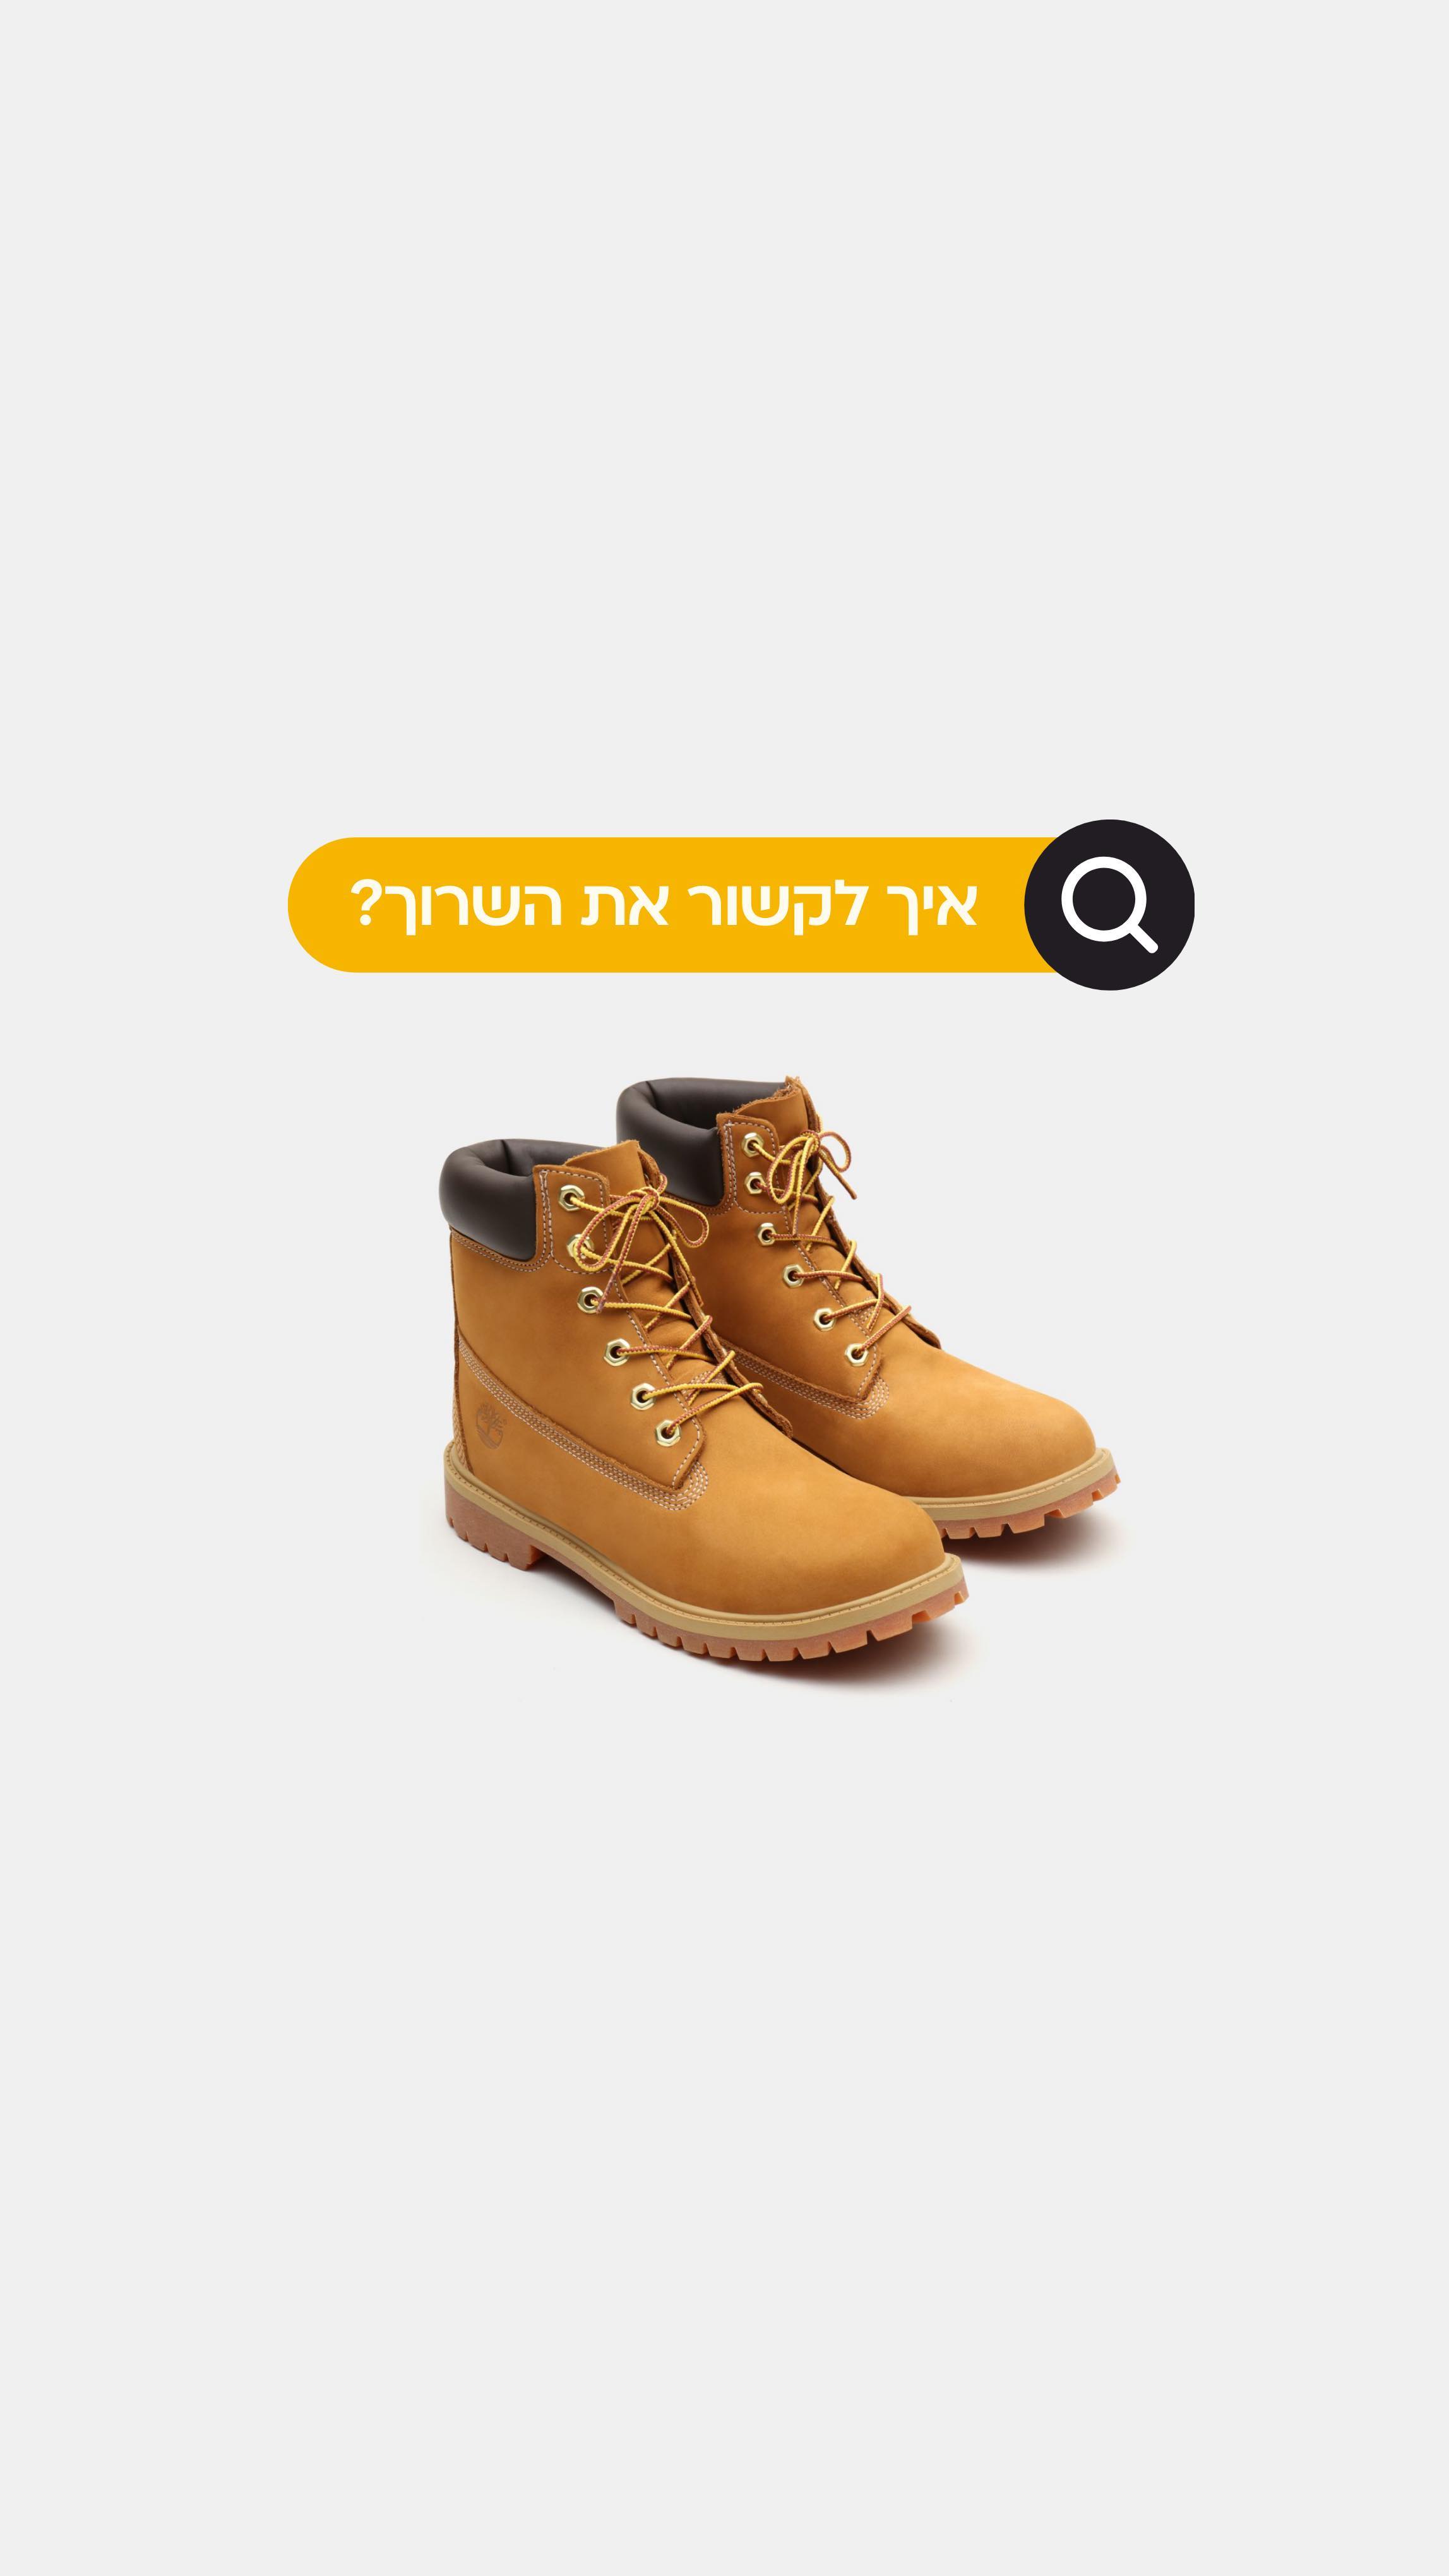 אחת ולתמיד: איך לקשור את השרוכים
במגפי ה-yellow boots של טימברלנד? 🤔
צפו בסרטון הסבר עם 2 אפשרויות לקשירת השרוכים >>